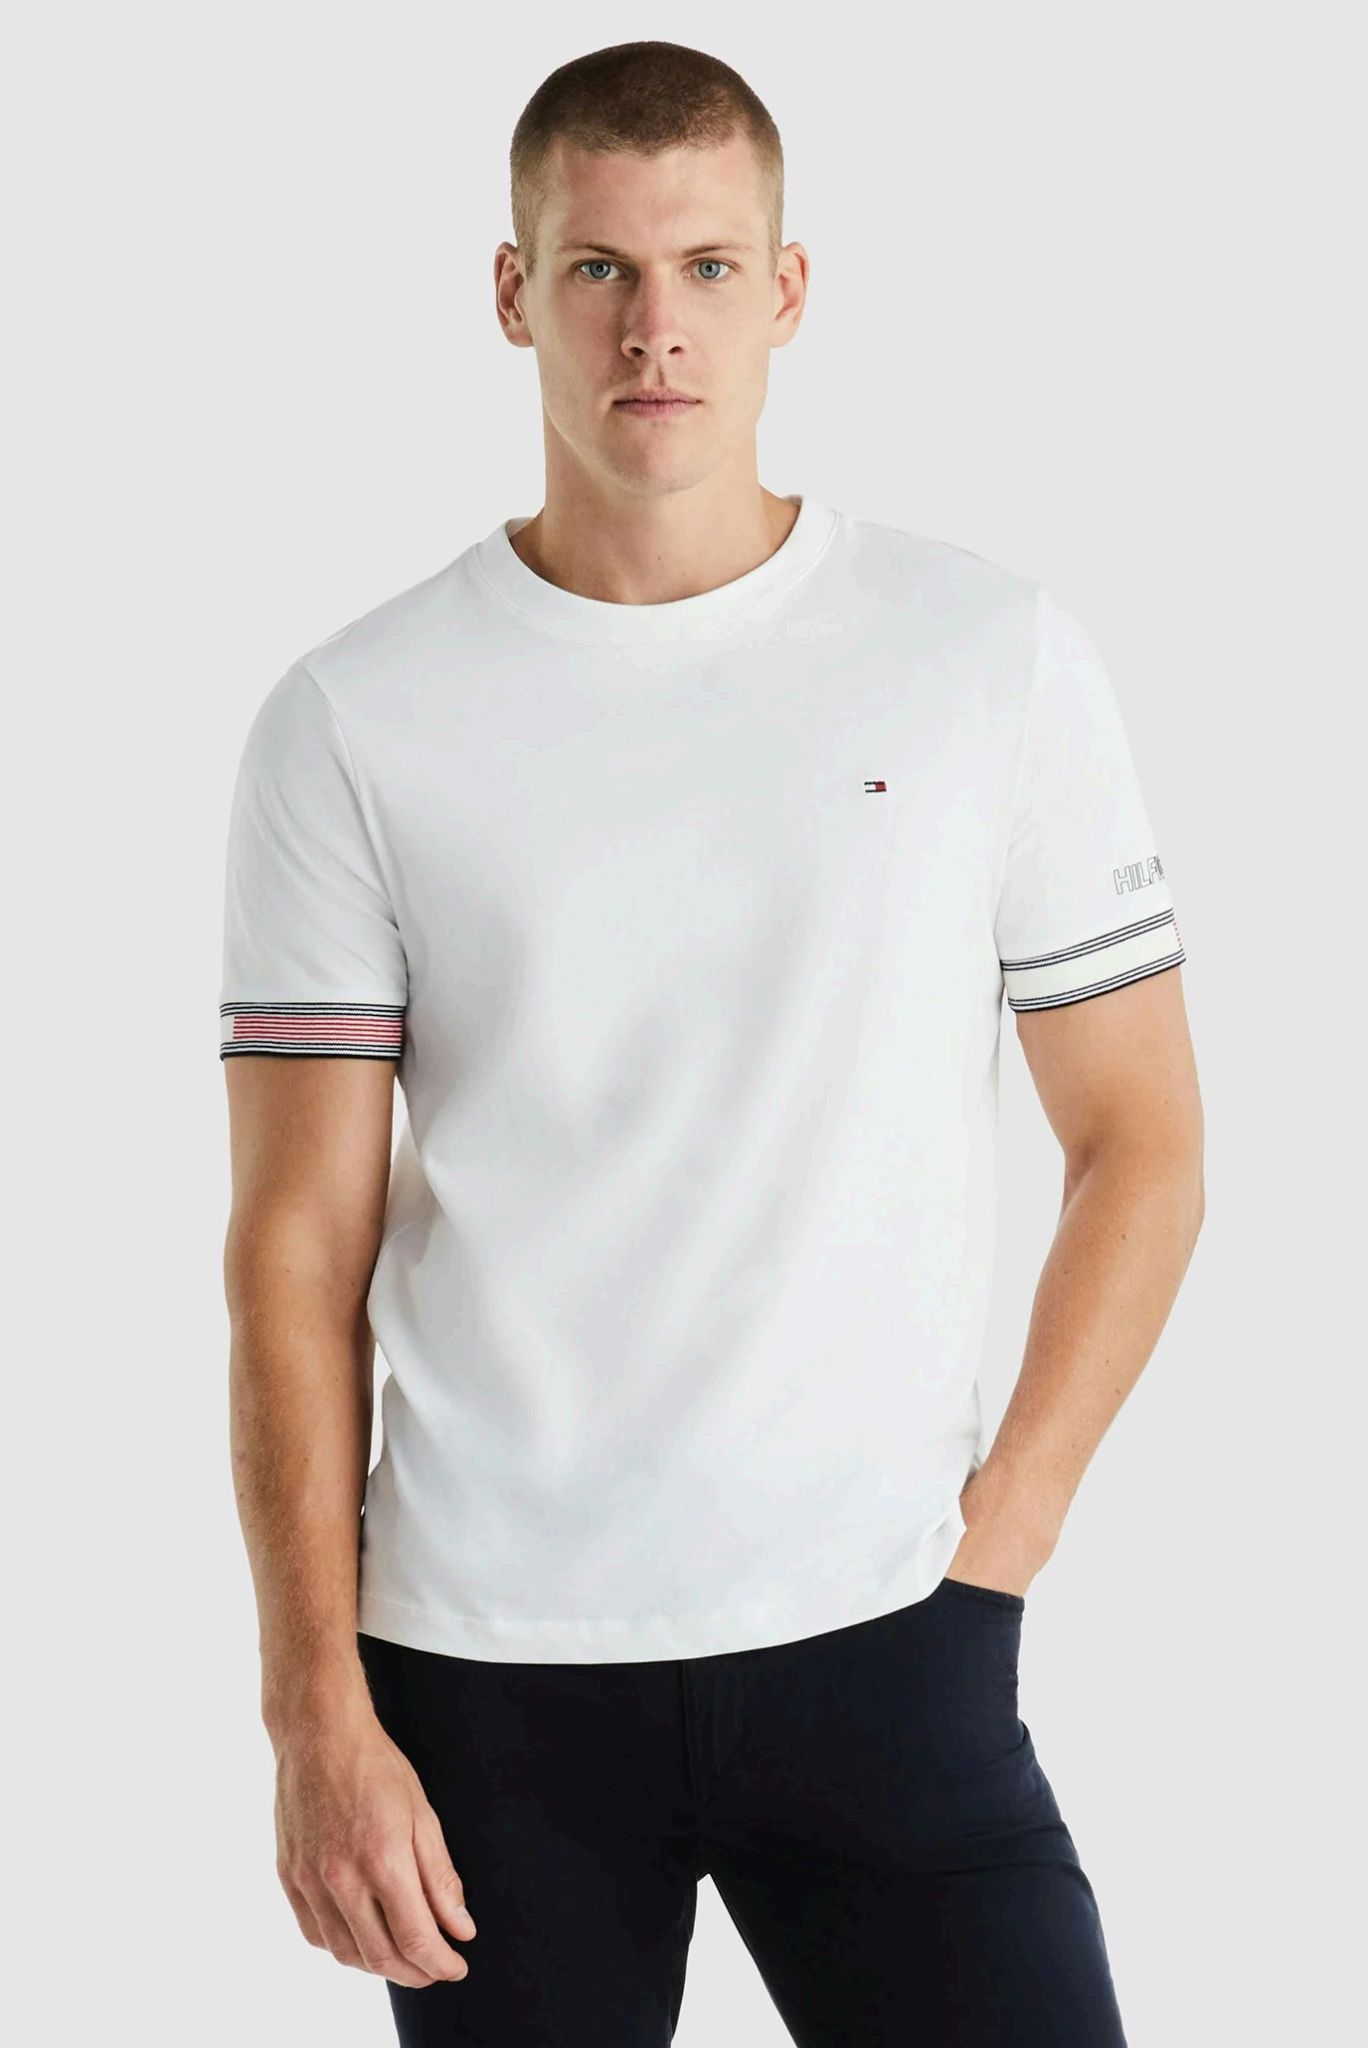 Чоловічі футболки Tommy Hilfiger: поєднання стилю і комфорту